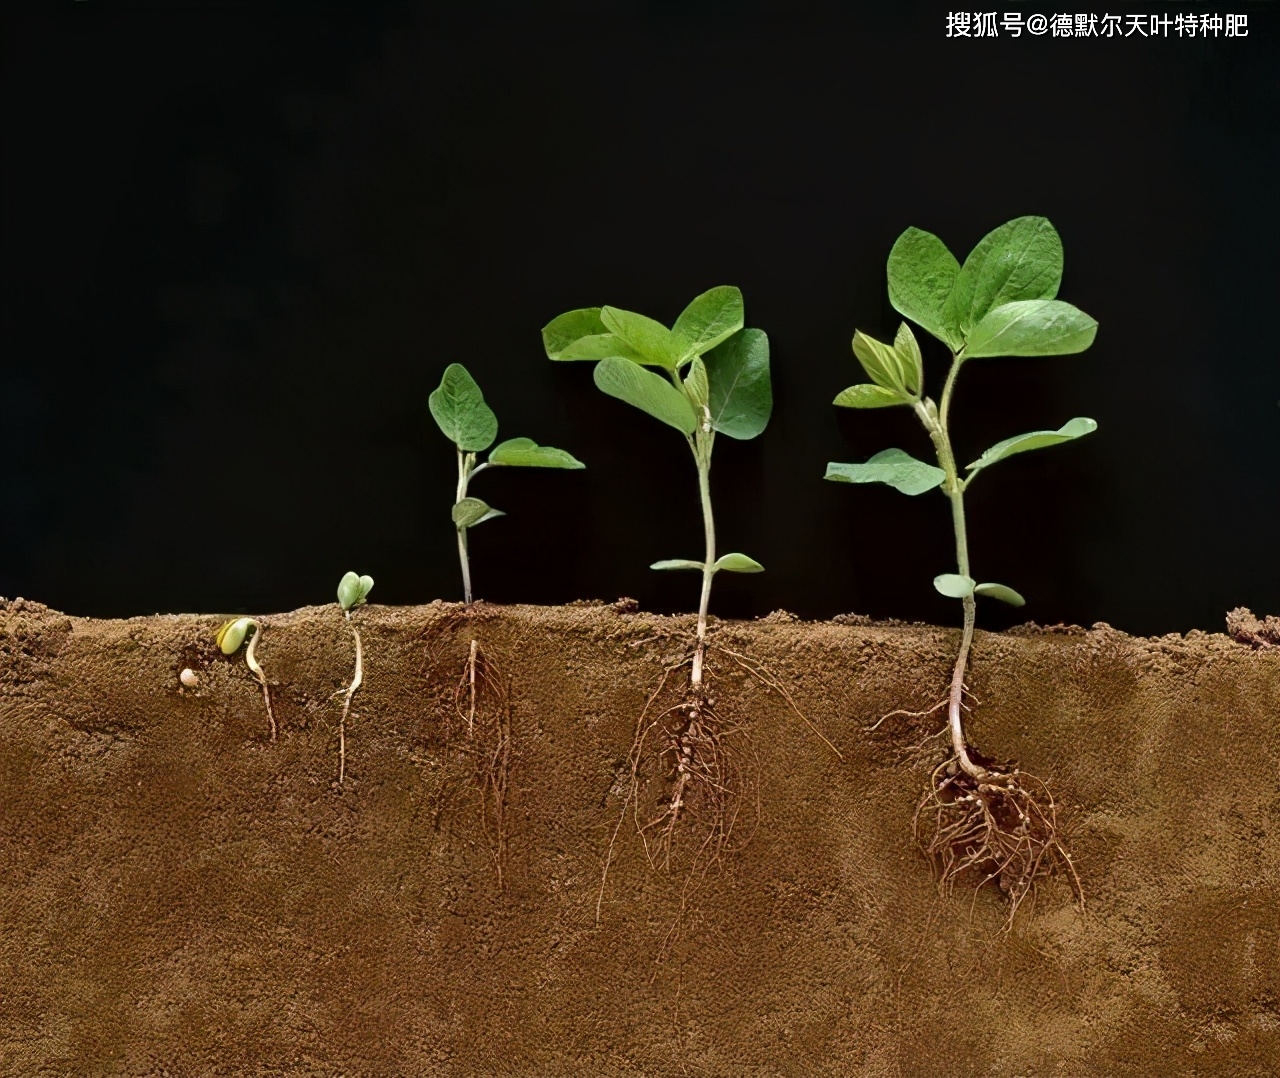 常规施肥措施虽然能提供给植物养分,但只有根系才知道需要什么养分